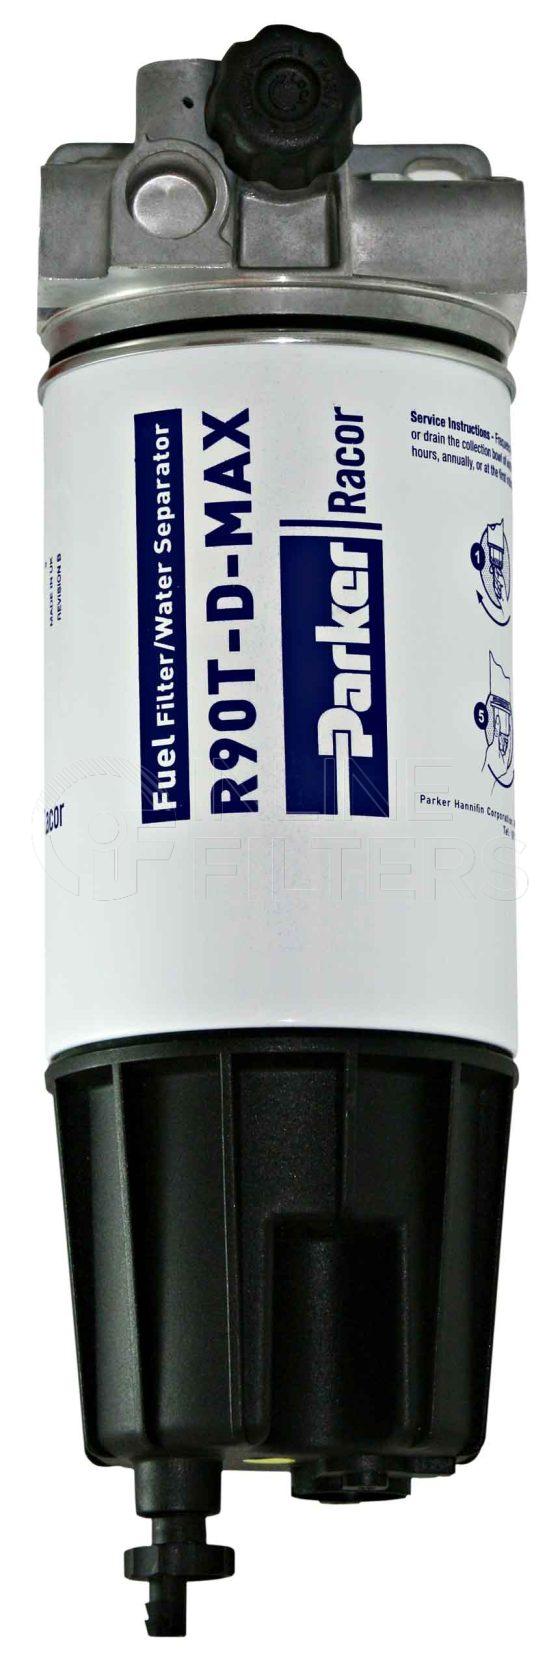 Racor MD5790PRV10RCR02. Fuel Filter Water Separator - Racor Spin-on Series - MD5790PRV10RCR02.